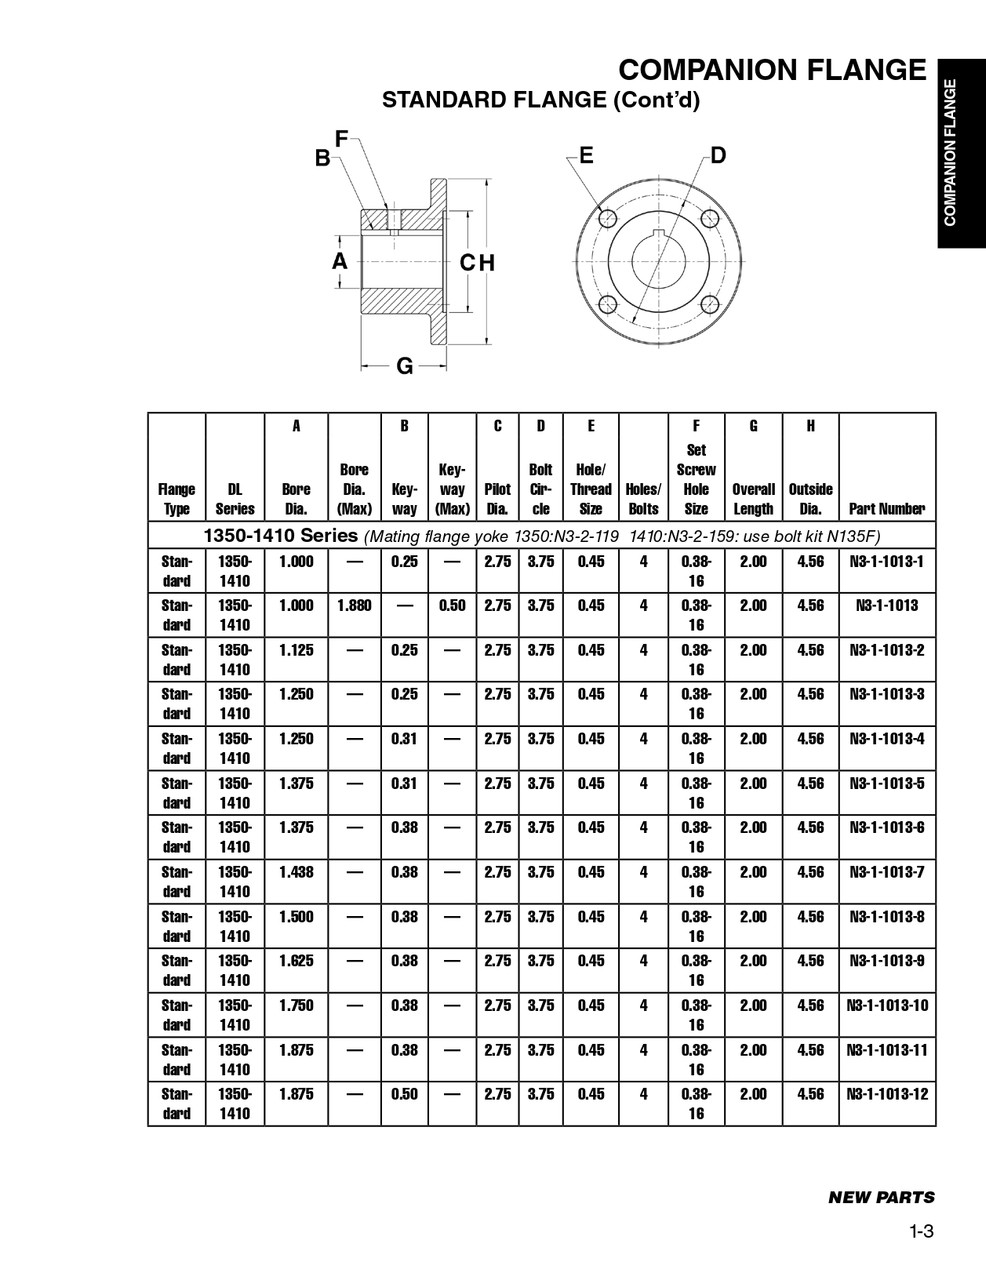 1.250" Round - Spicer® 1350/1410 Series Standard Comapnion Flange  N3-1-1013-4